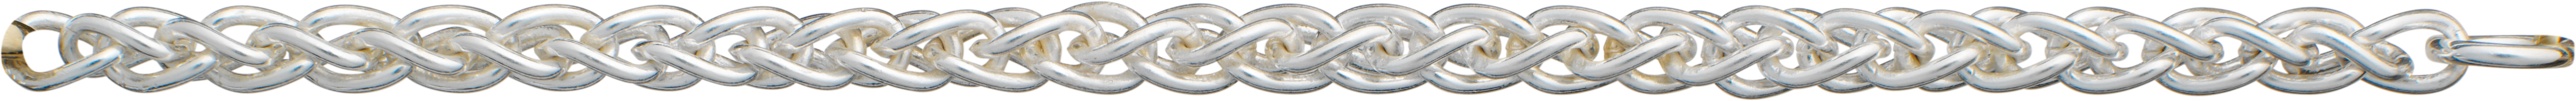 Braid chain silver 925/- Ø 3,20mm